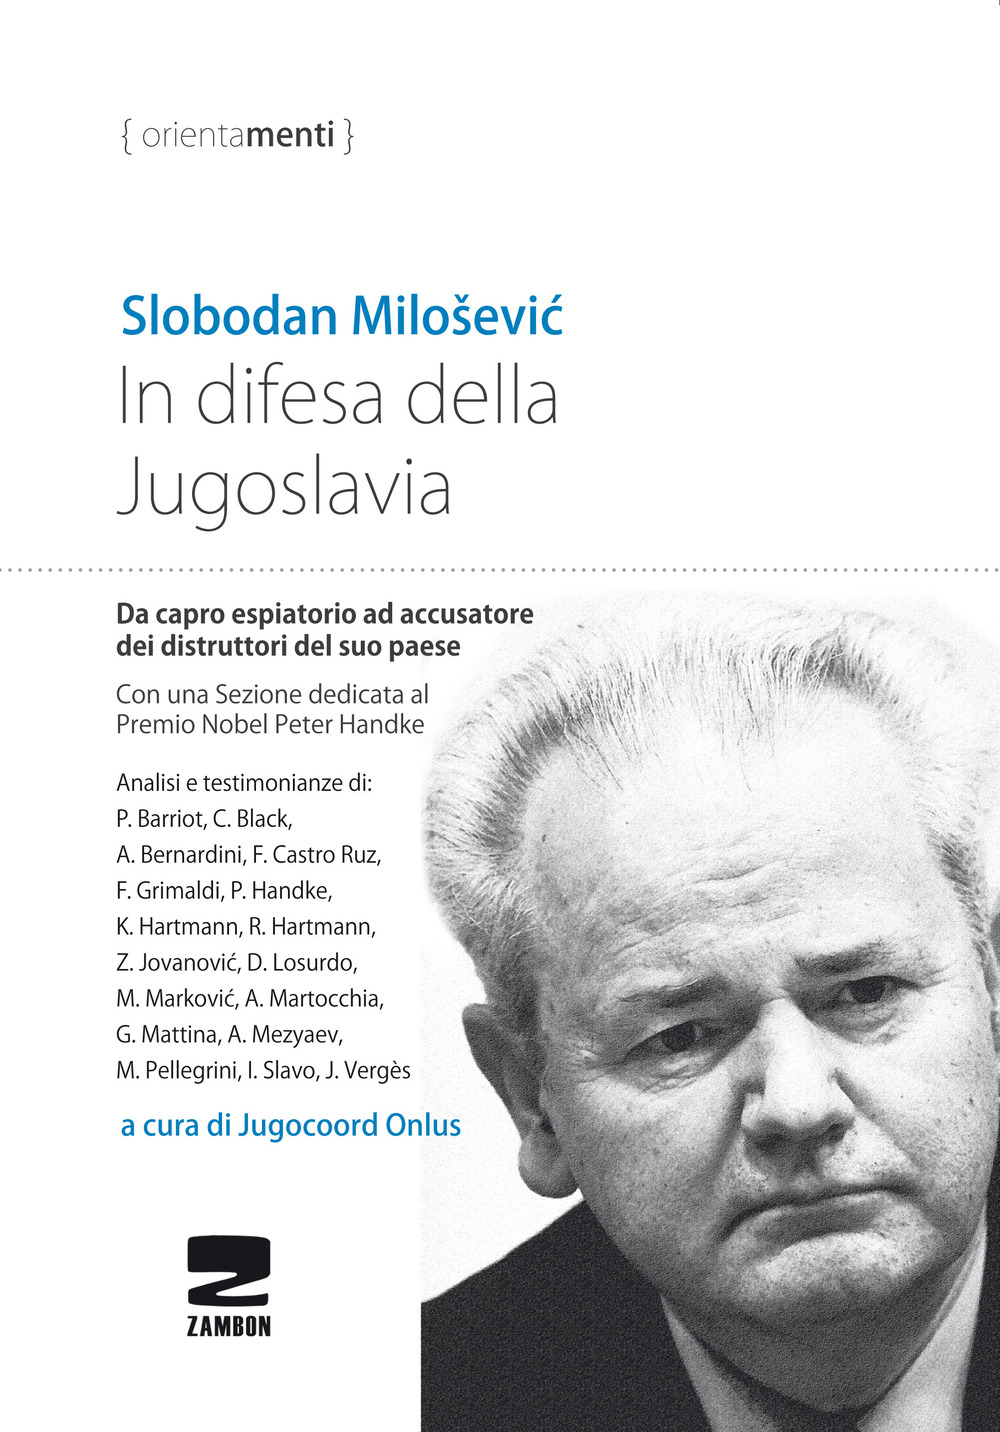 In difesa della Jugoslavia. La tragica vicenda di Slobodan Milosevic da capro espiatorio ad accusatore per la distruzione del suo paese